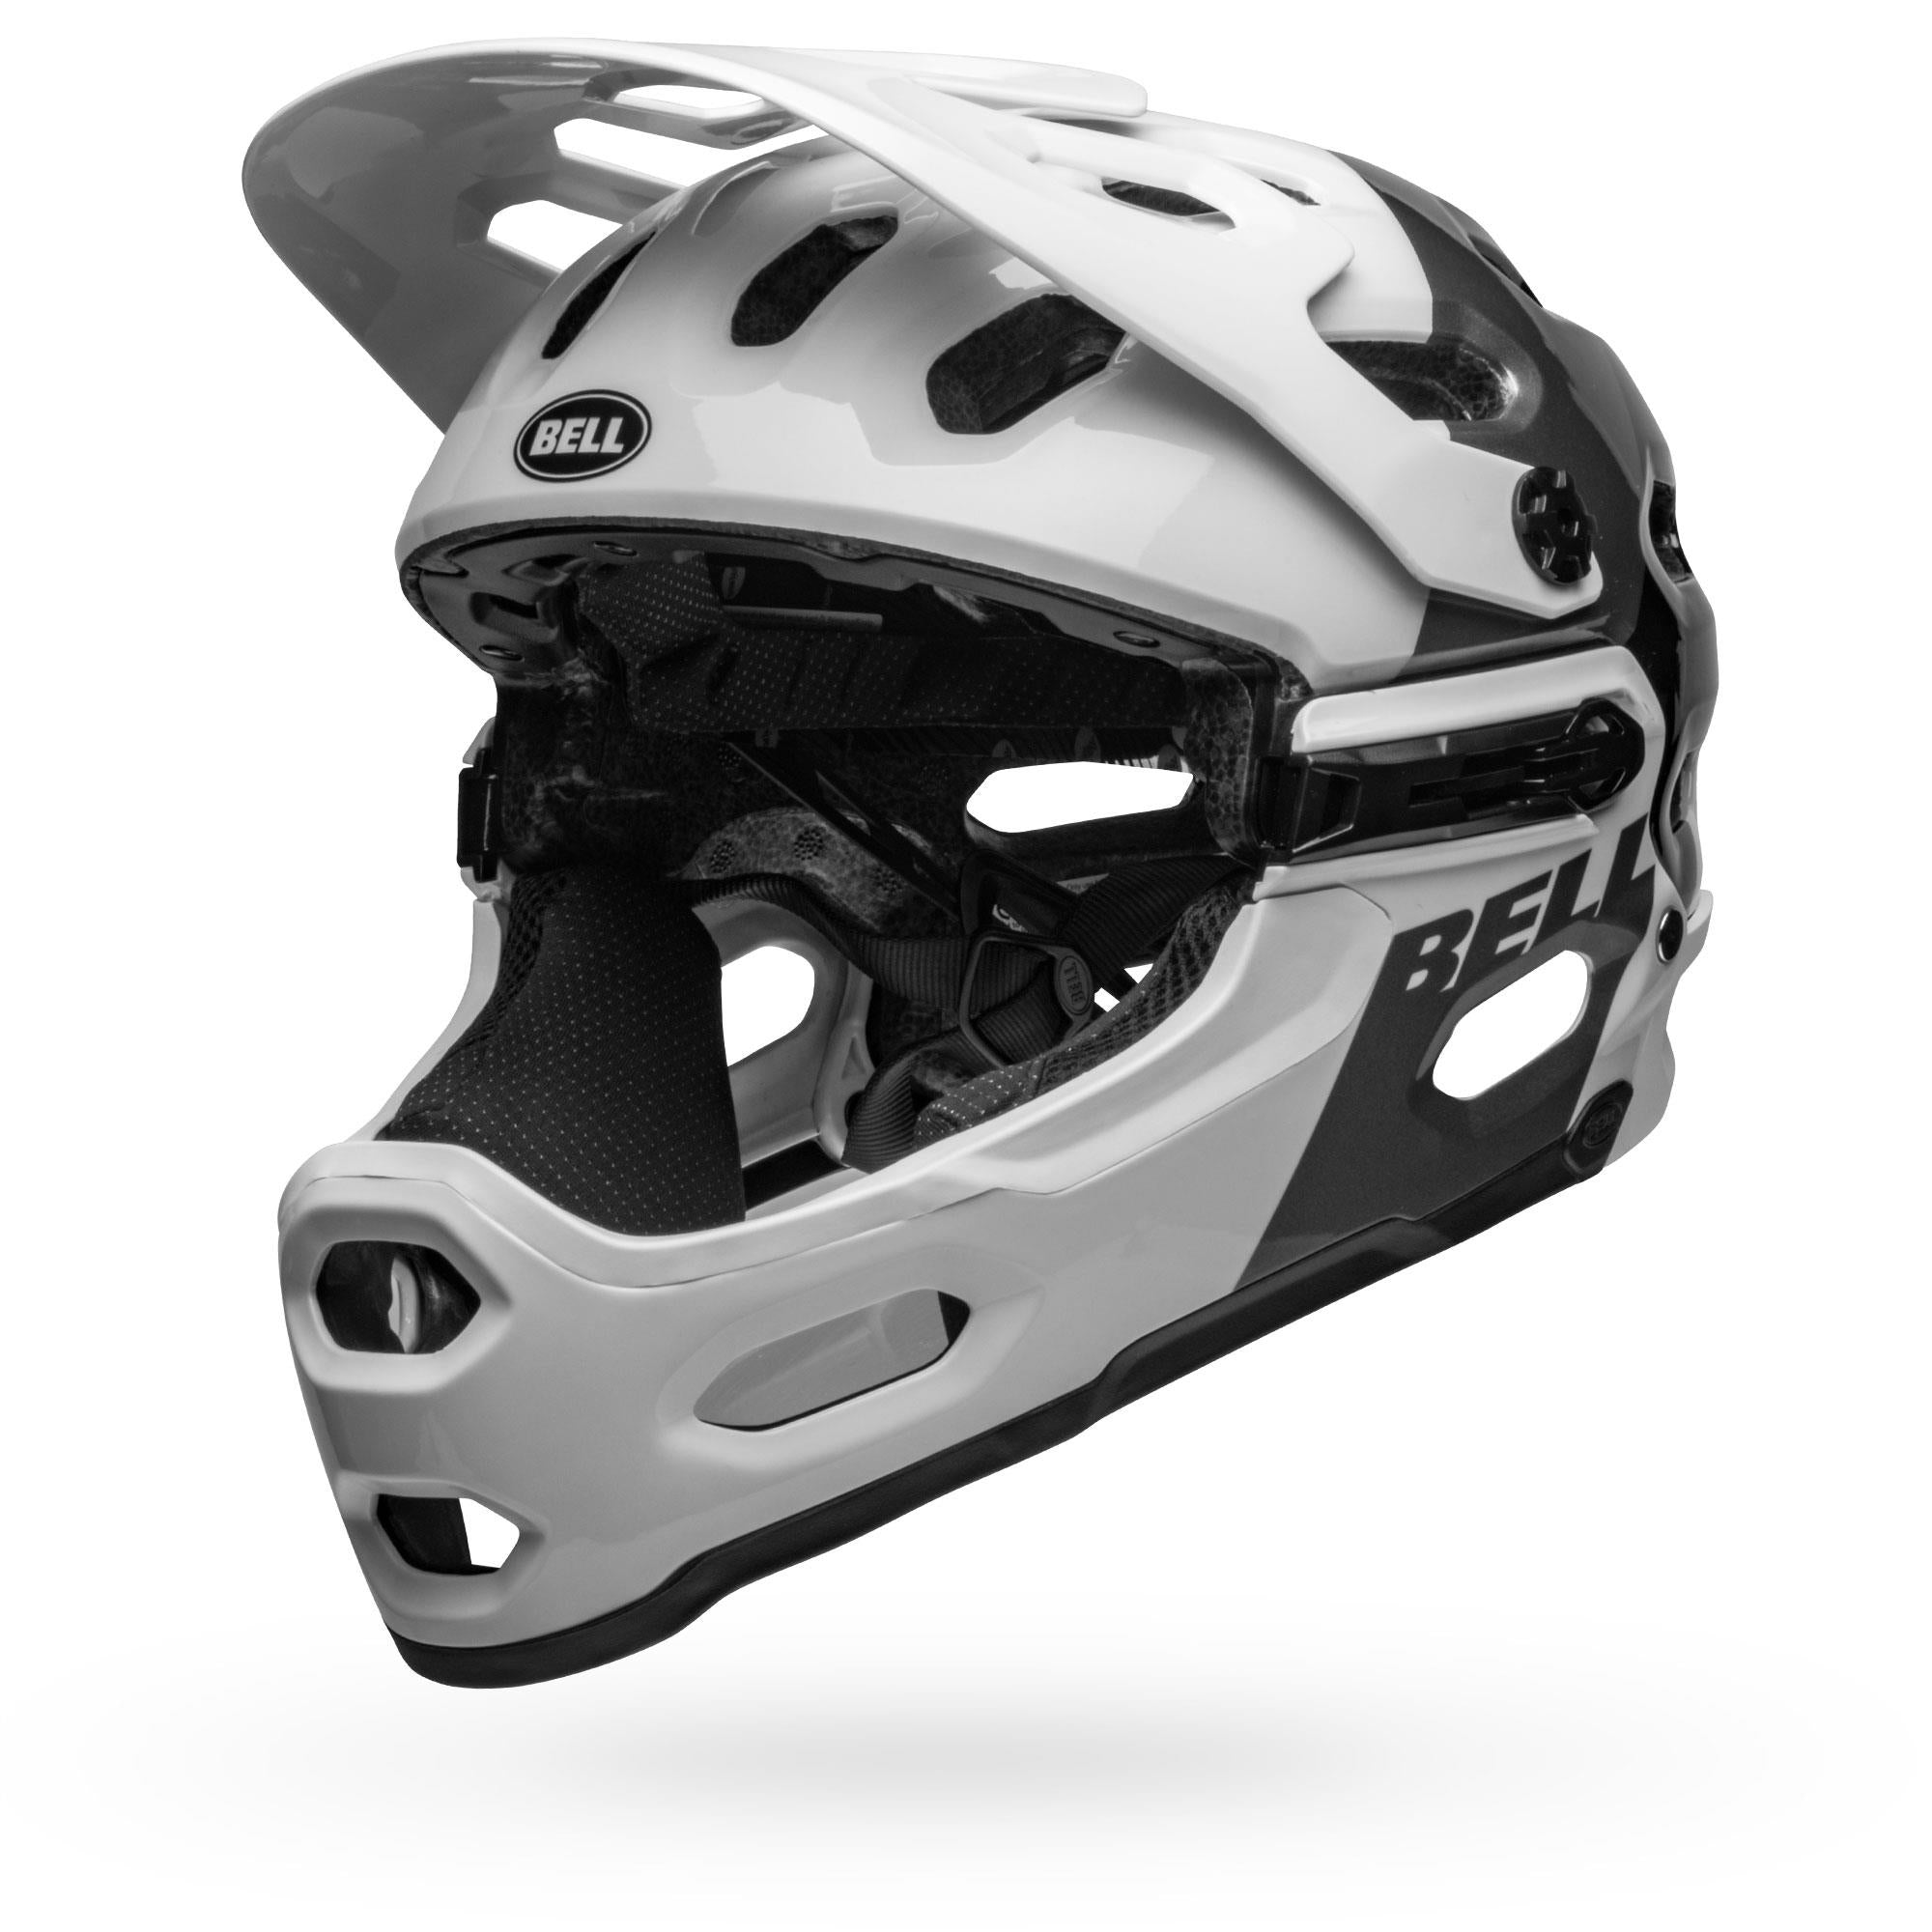 Super 3R MIPS MTB Helmet – Bell Bike Helmets